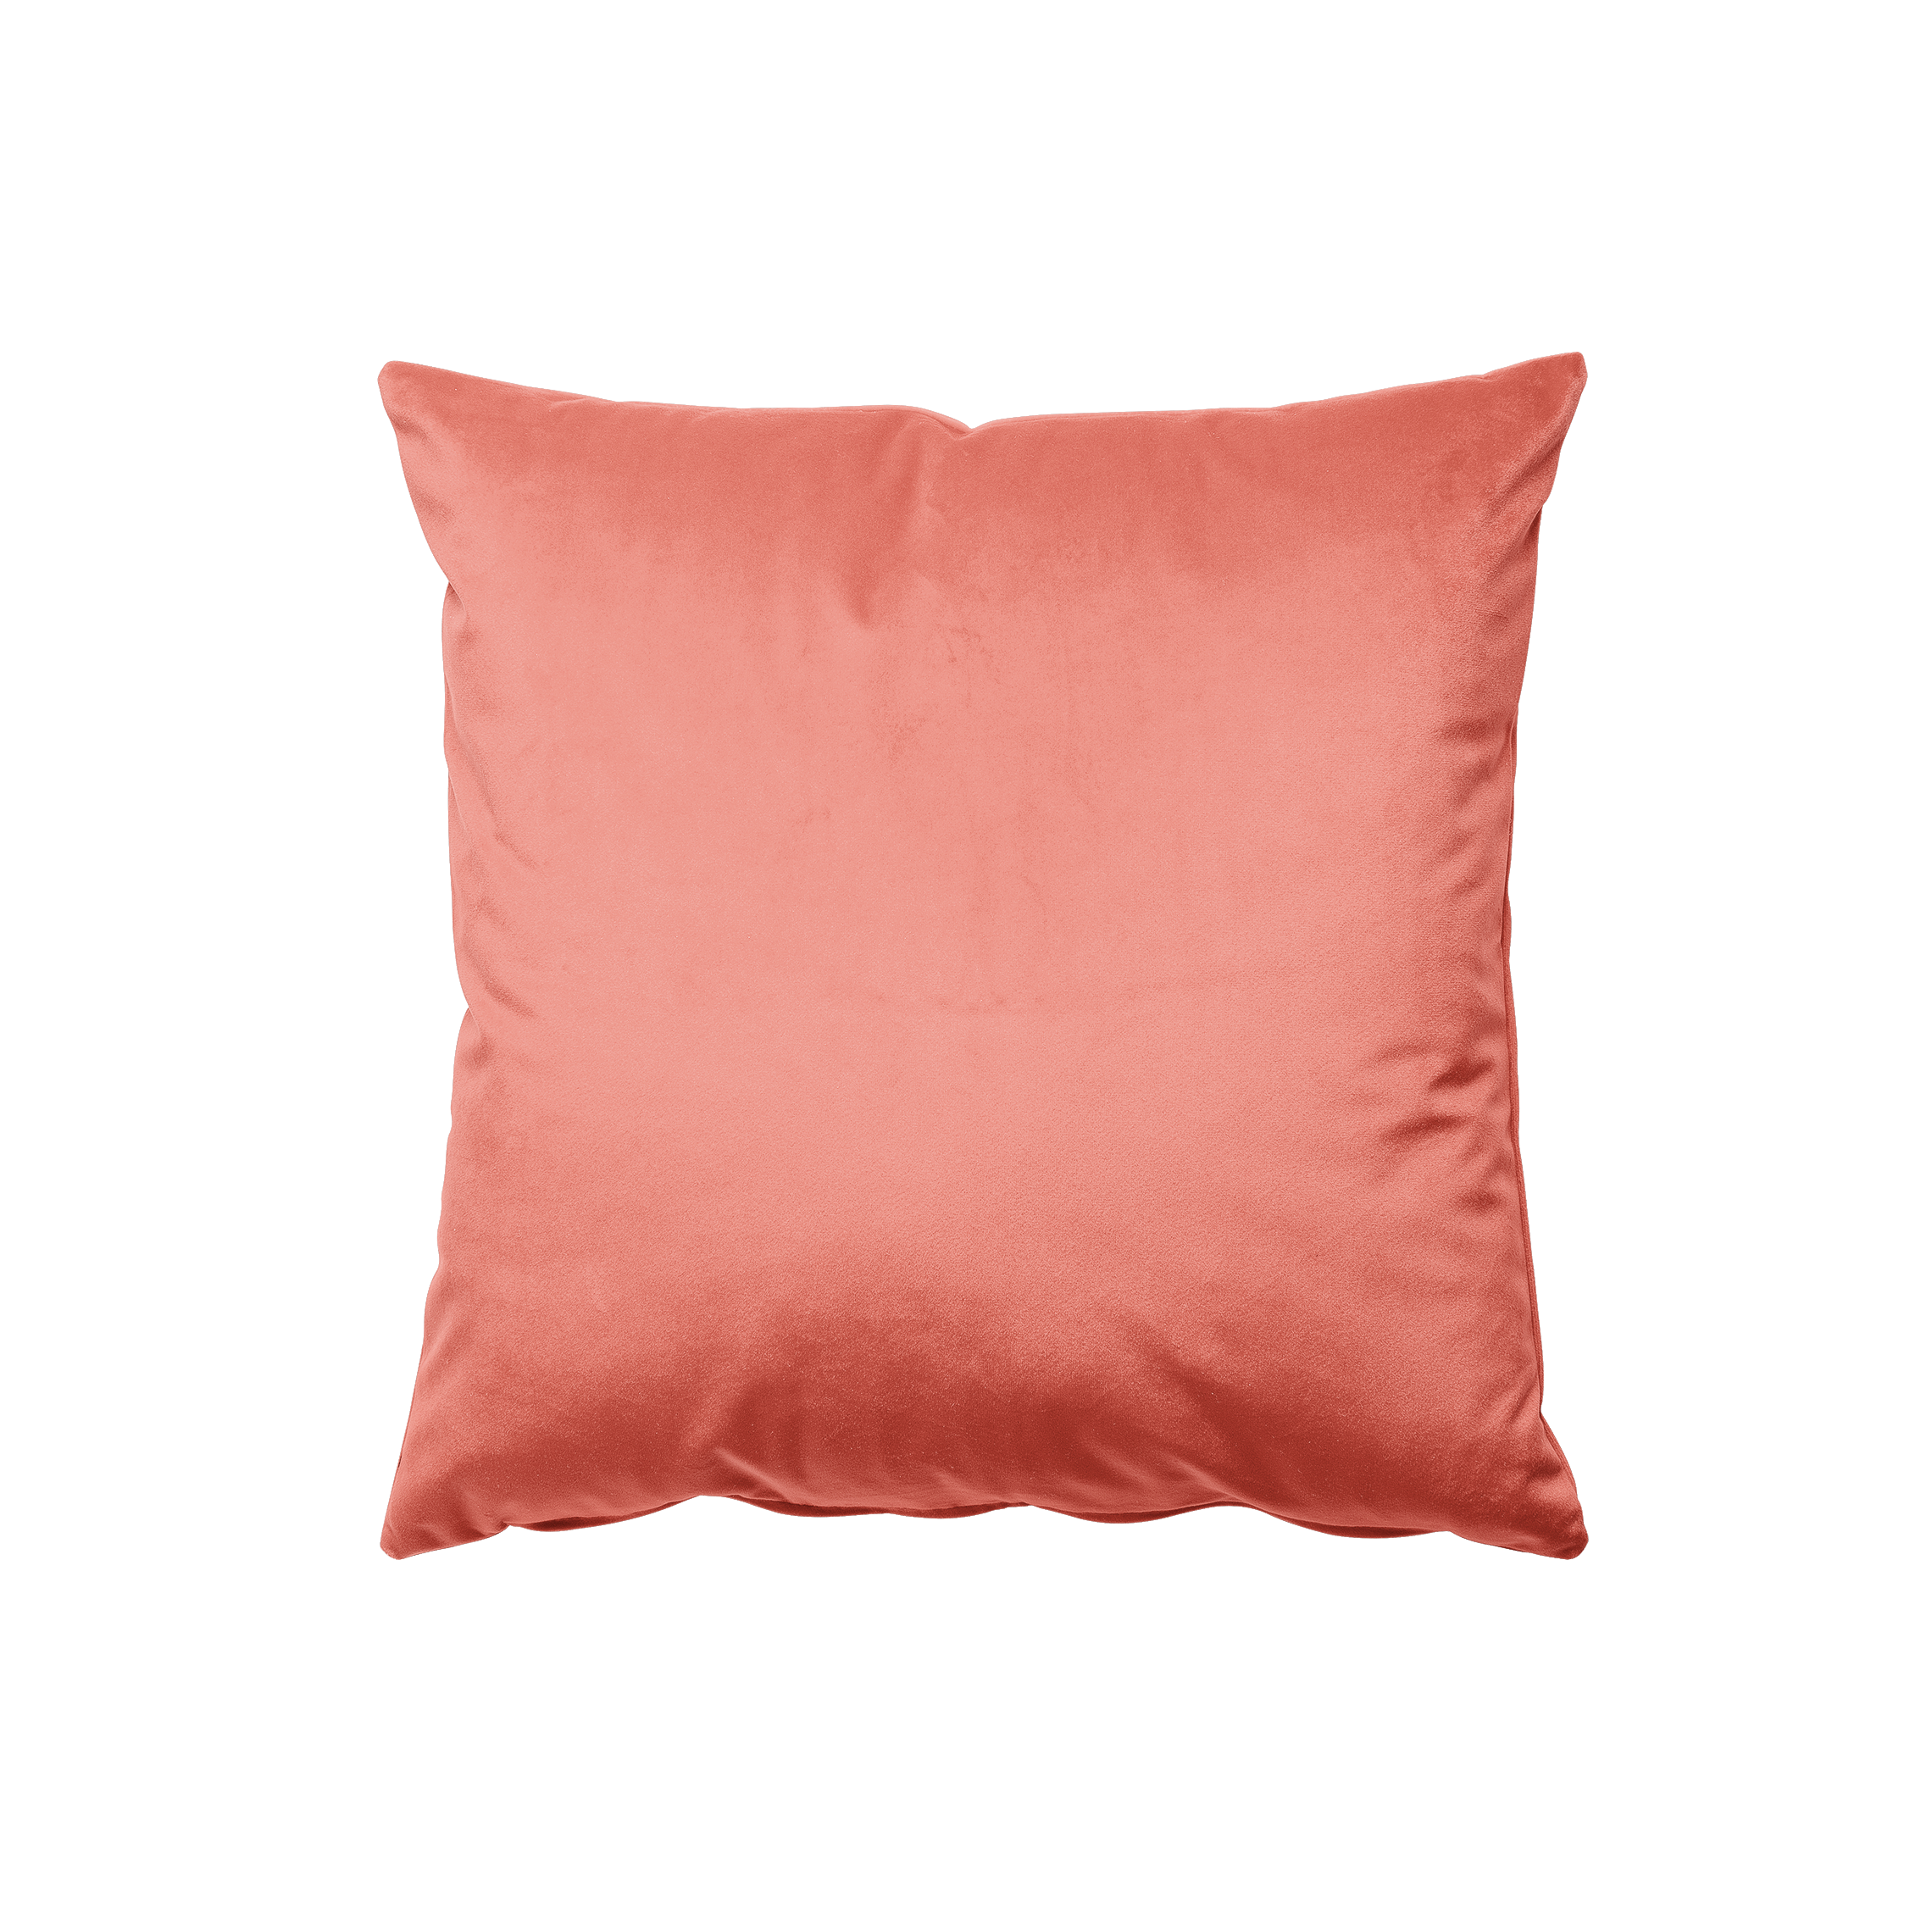 Coral Velvet Pillow